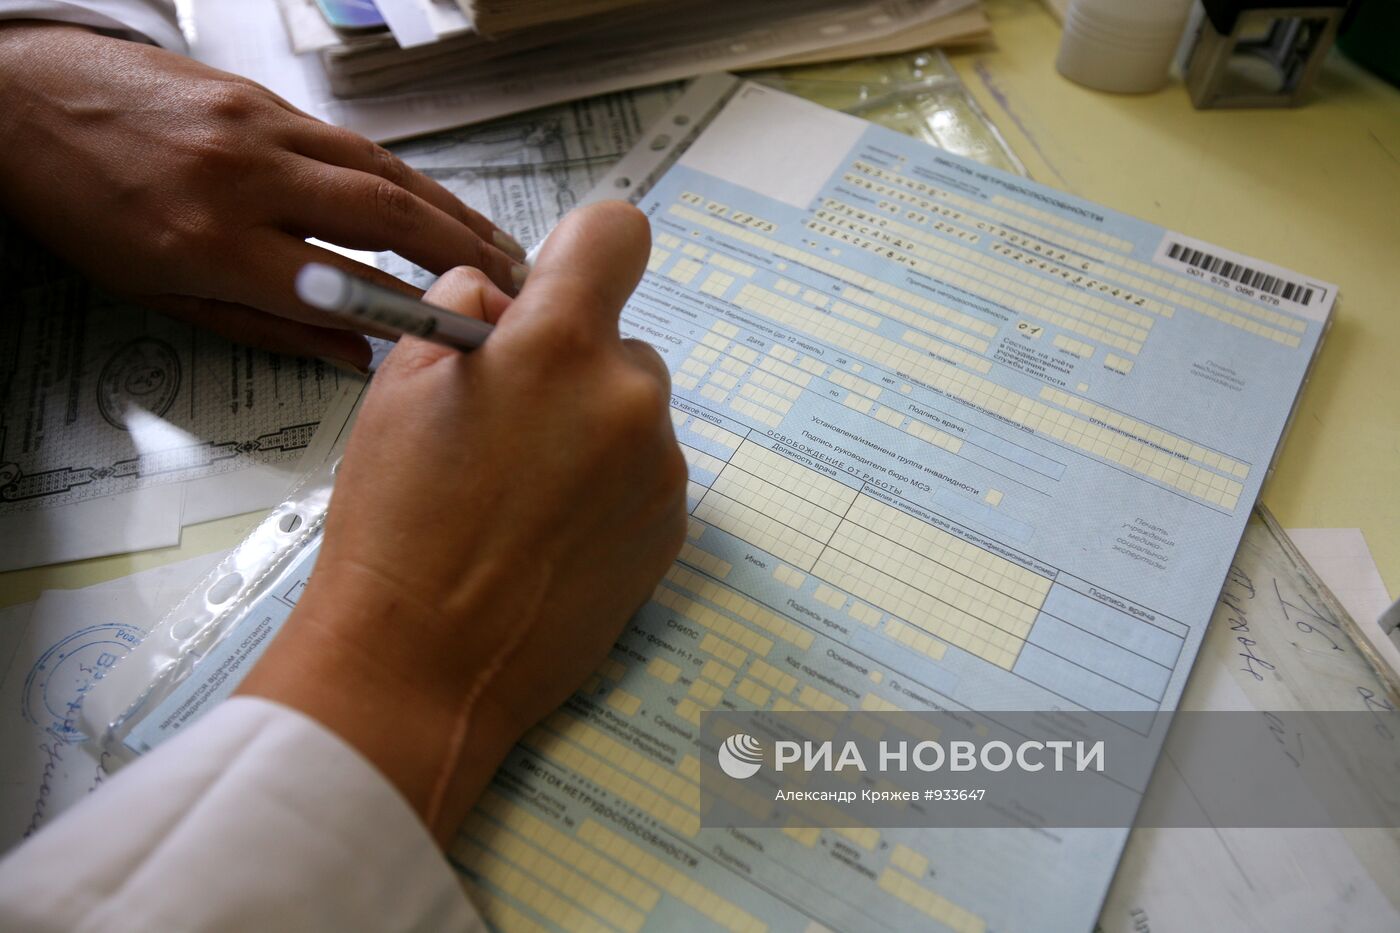 Работа сельской амбулатории в Новосибирской области